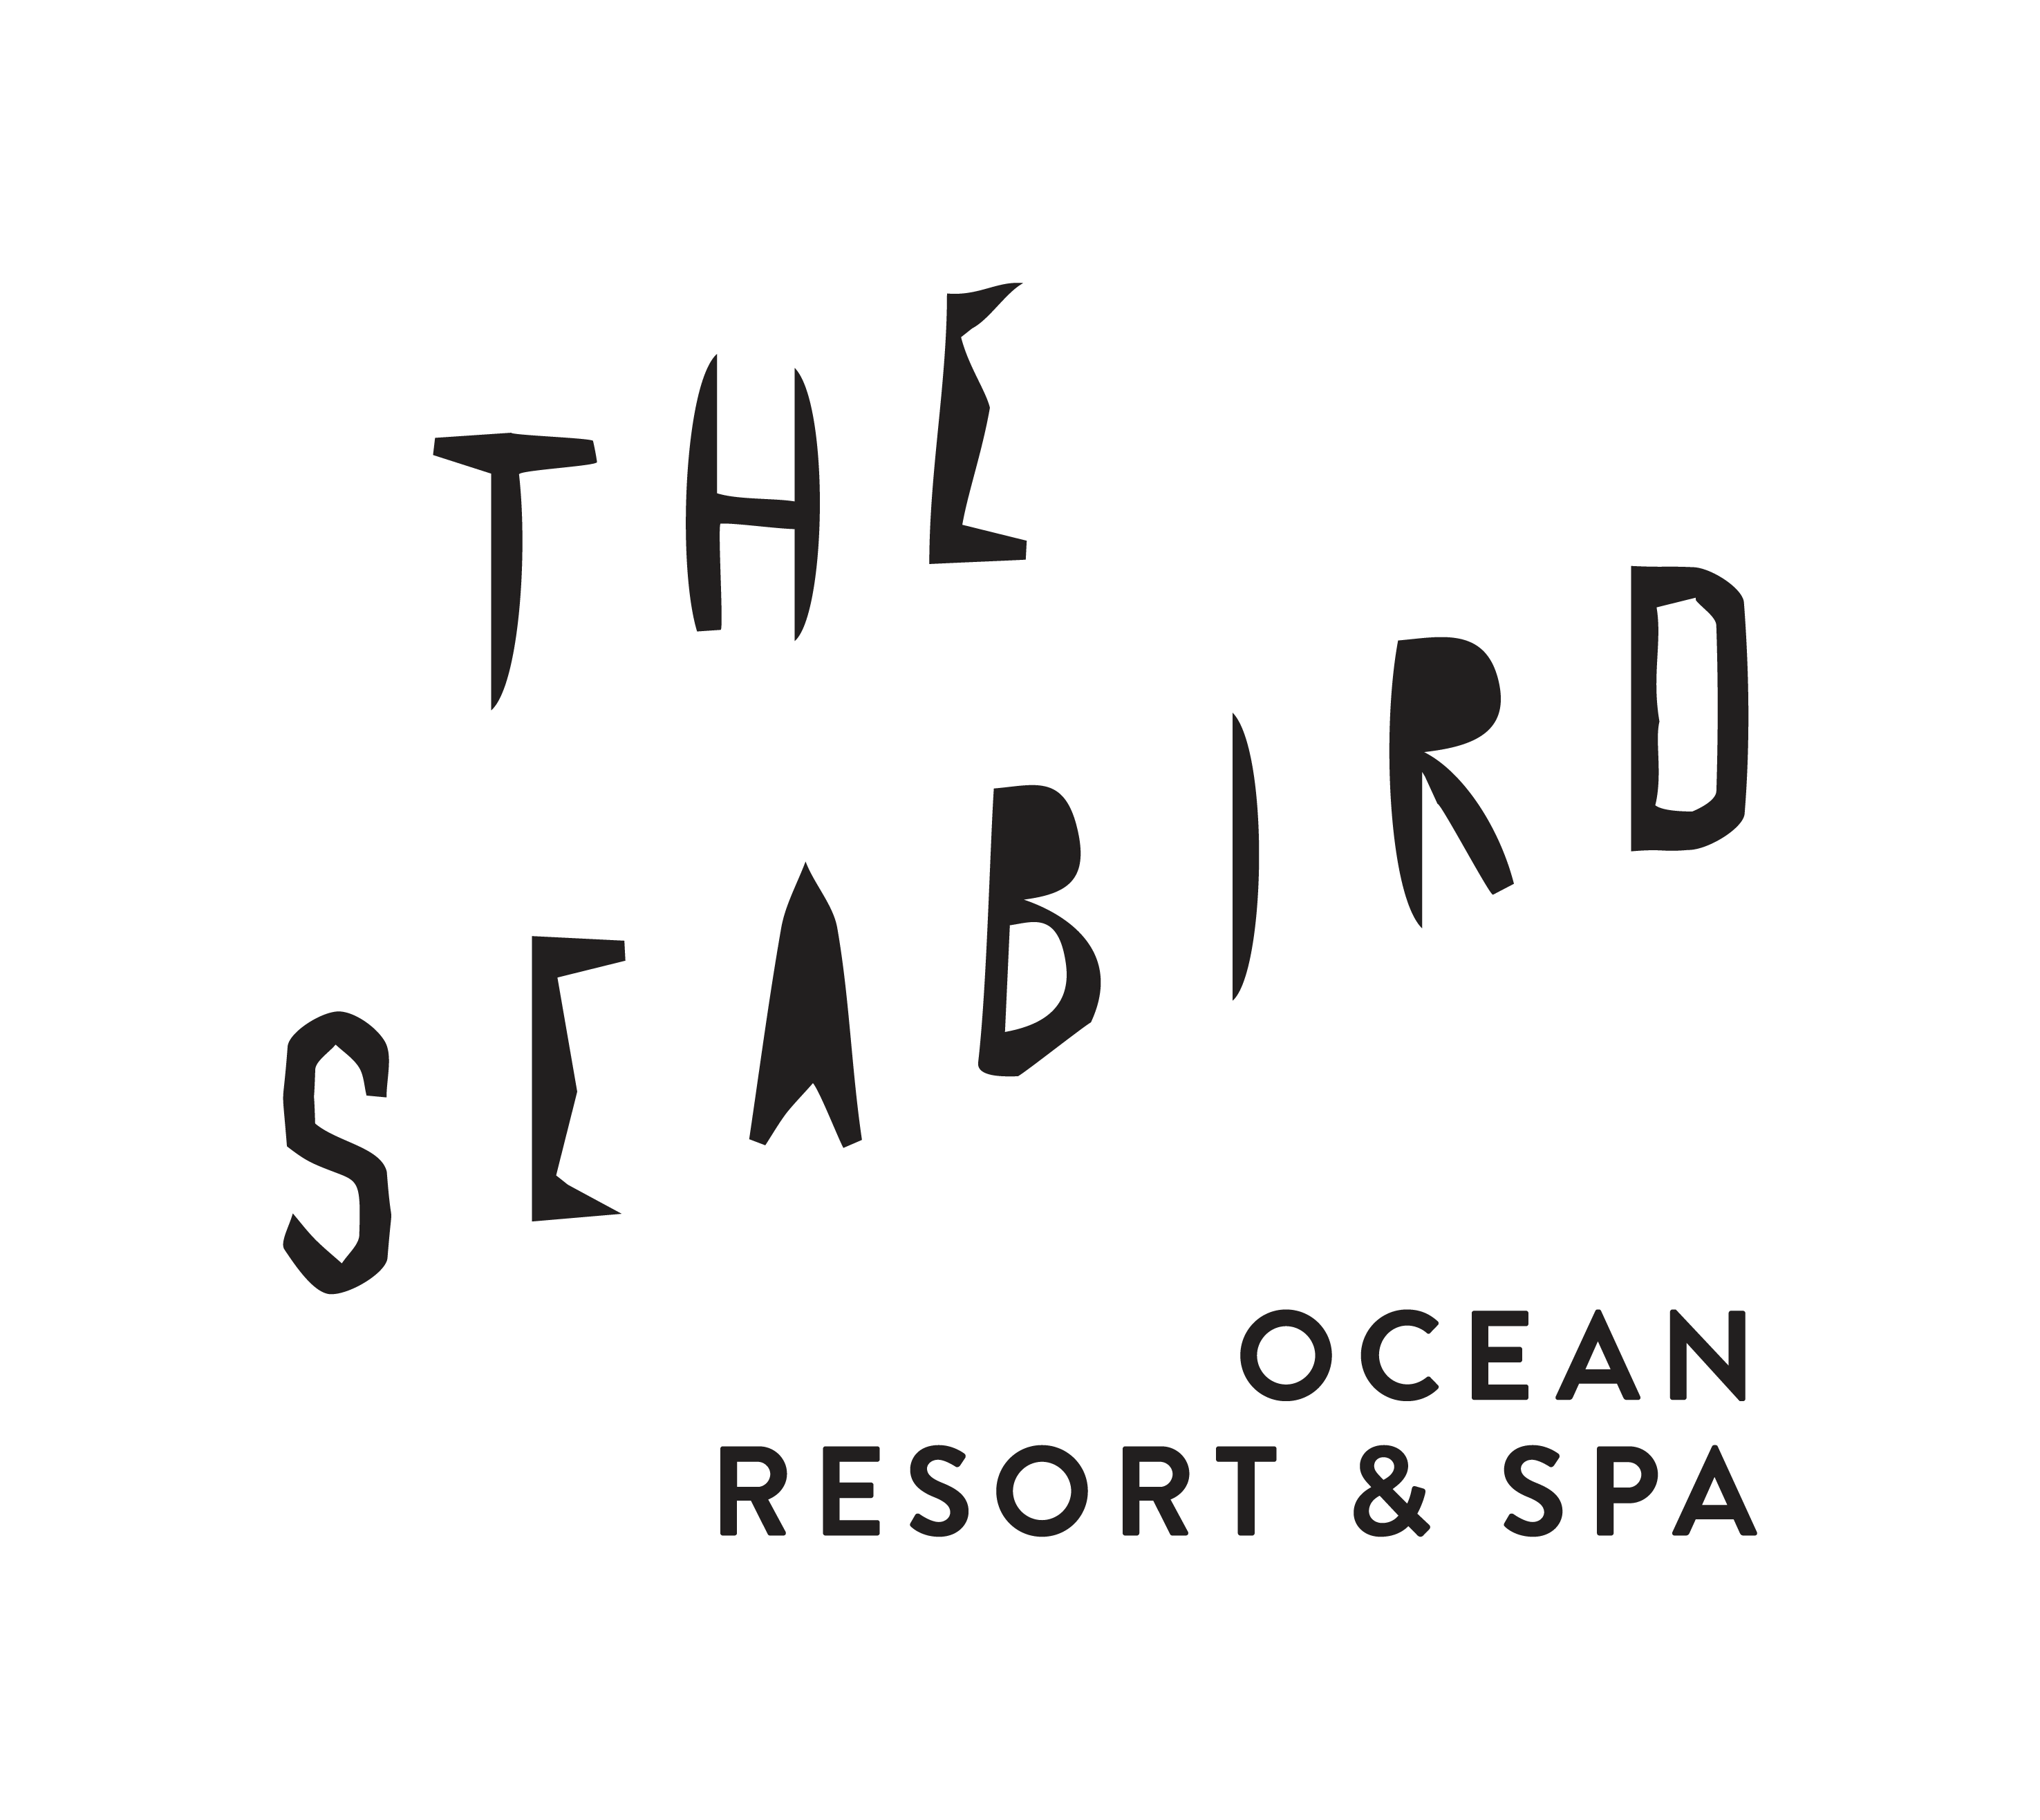 The Seabird Ocean Resort & Spa